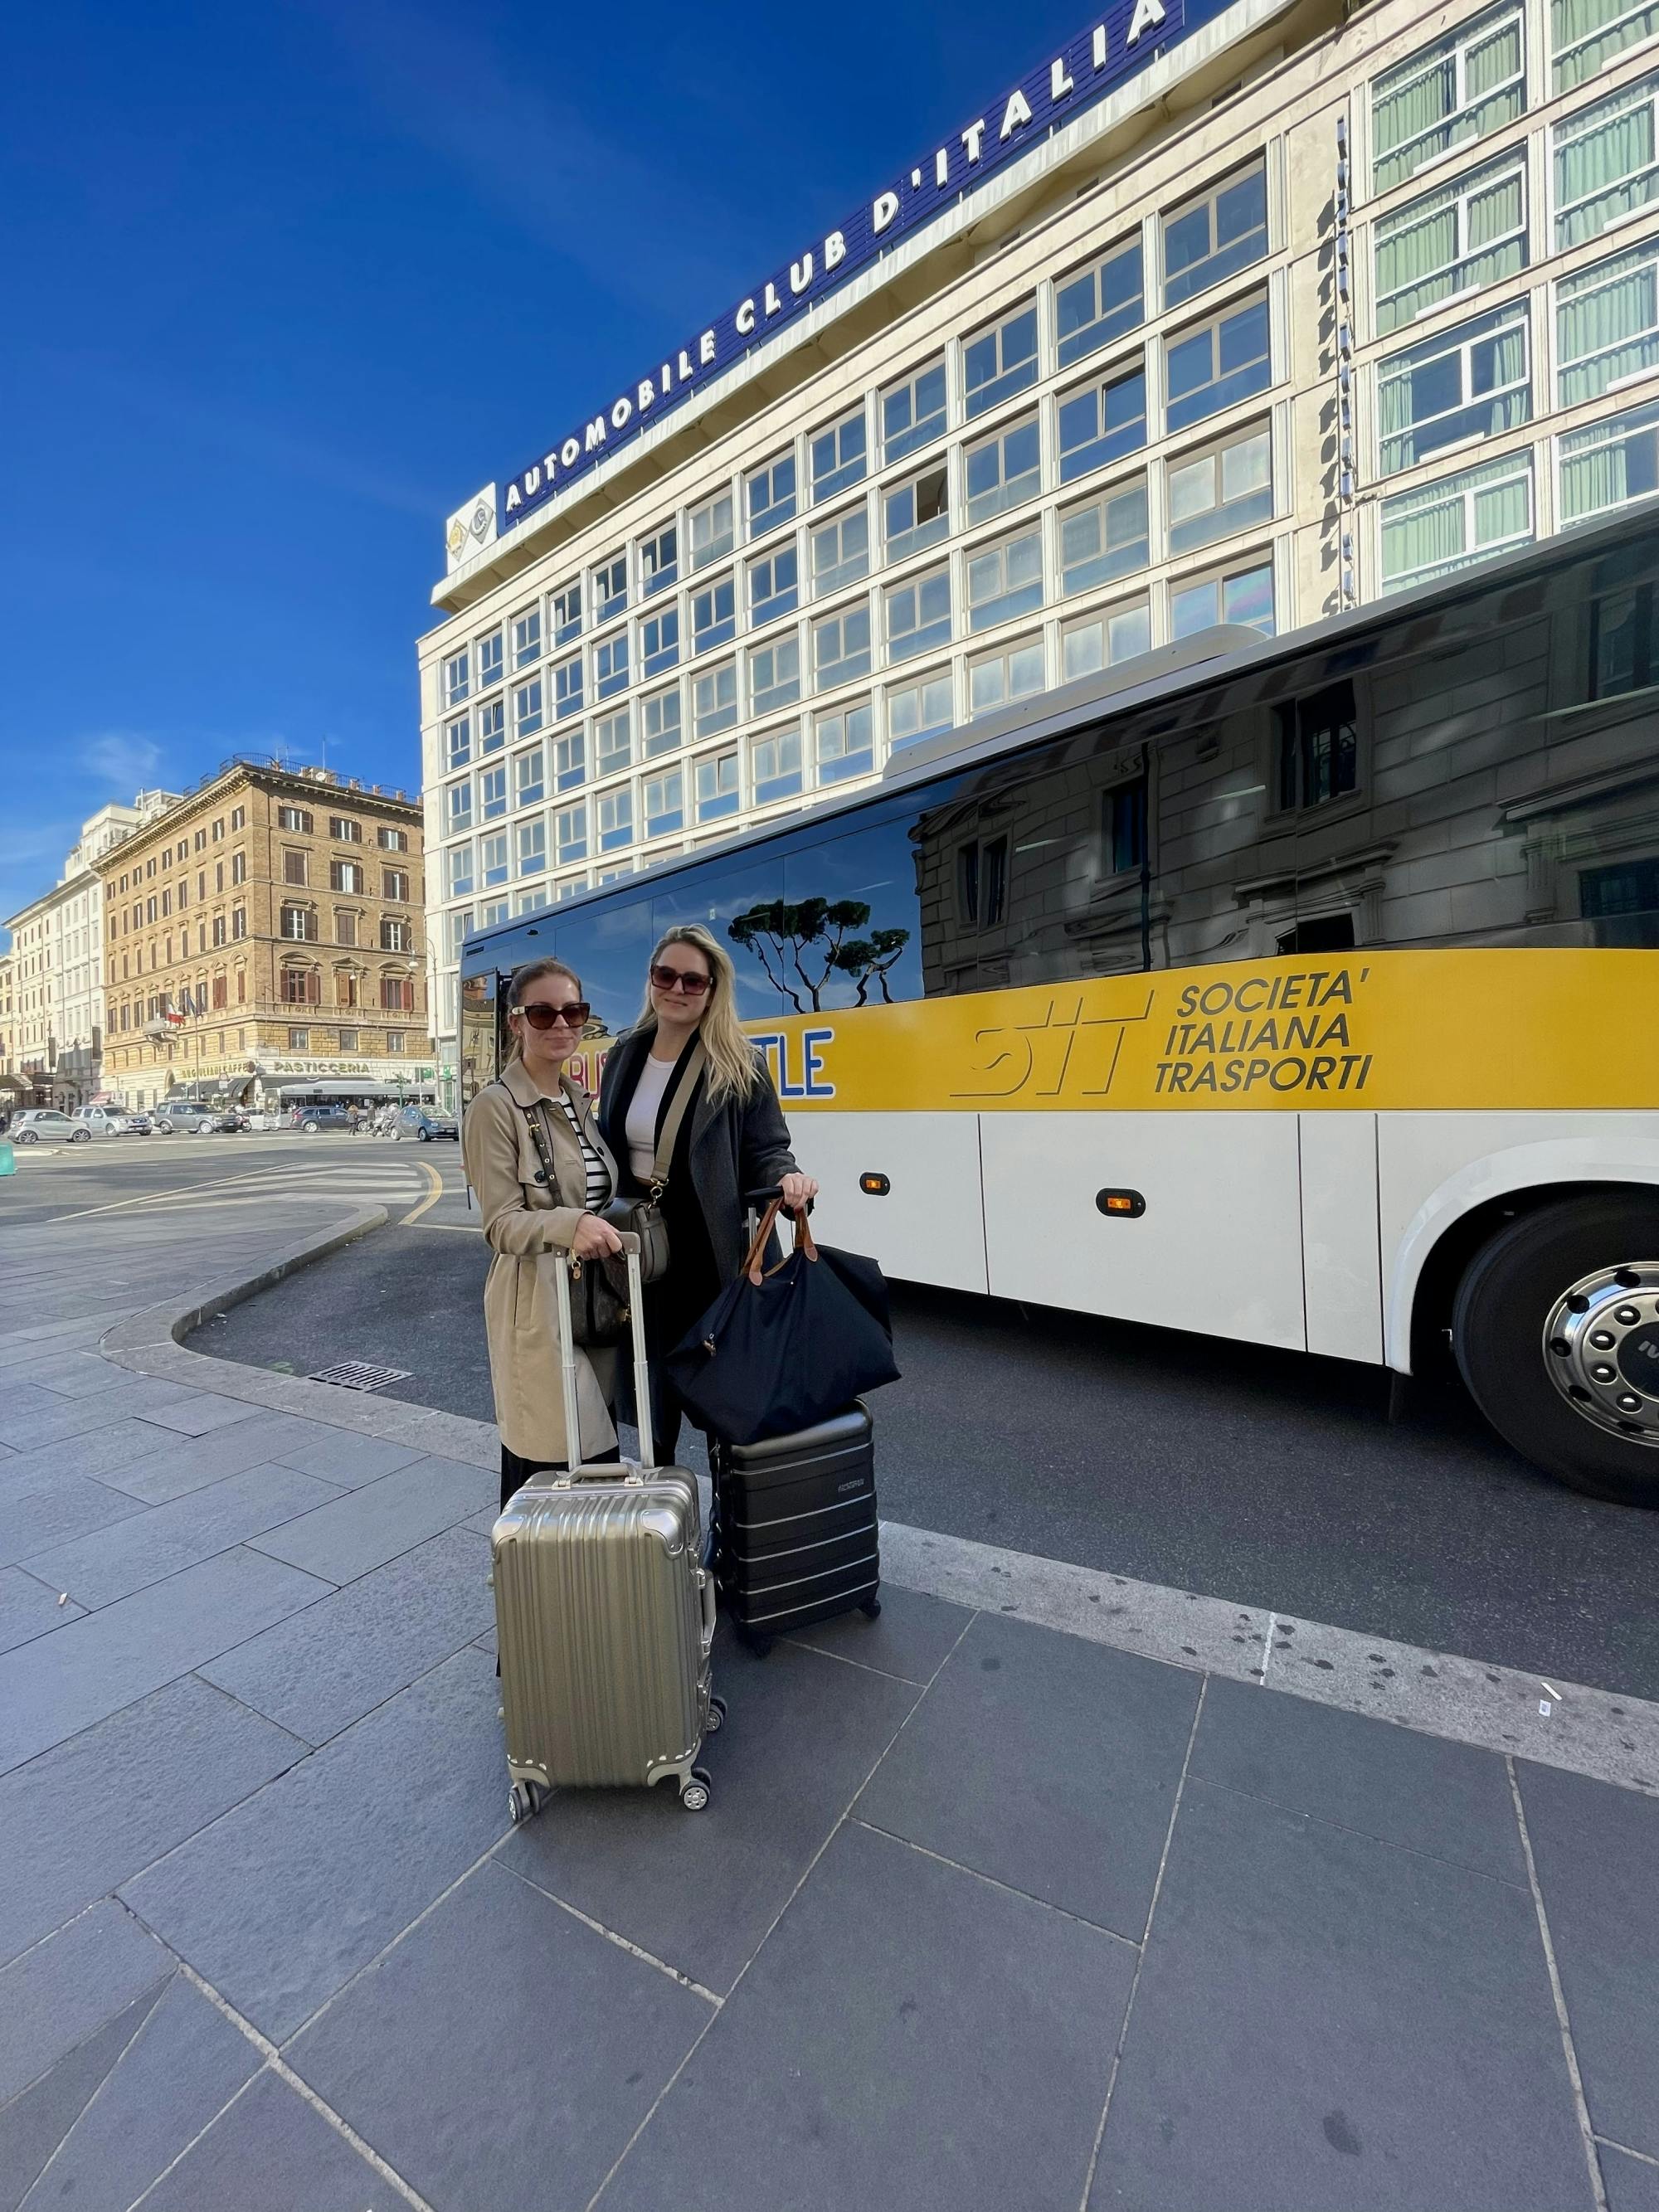 Transfer van Civitavecchia naar Rome inclusief open buskaartje